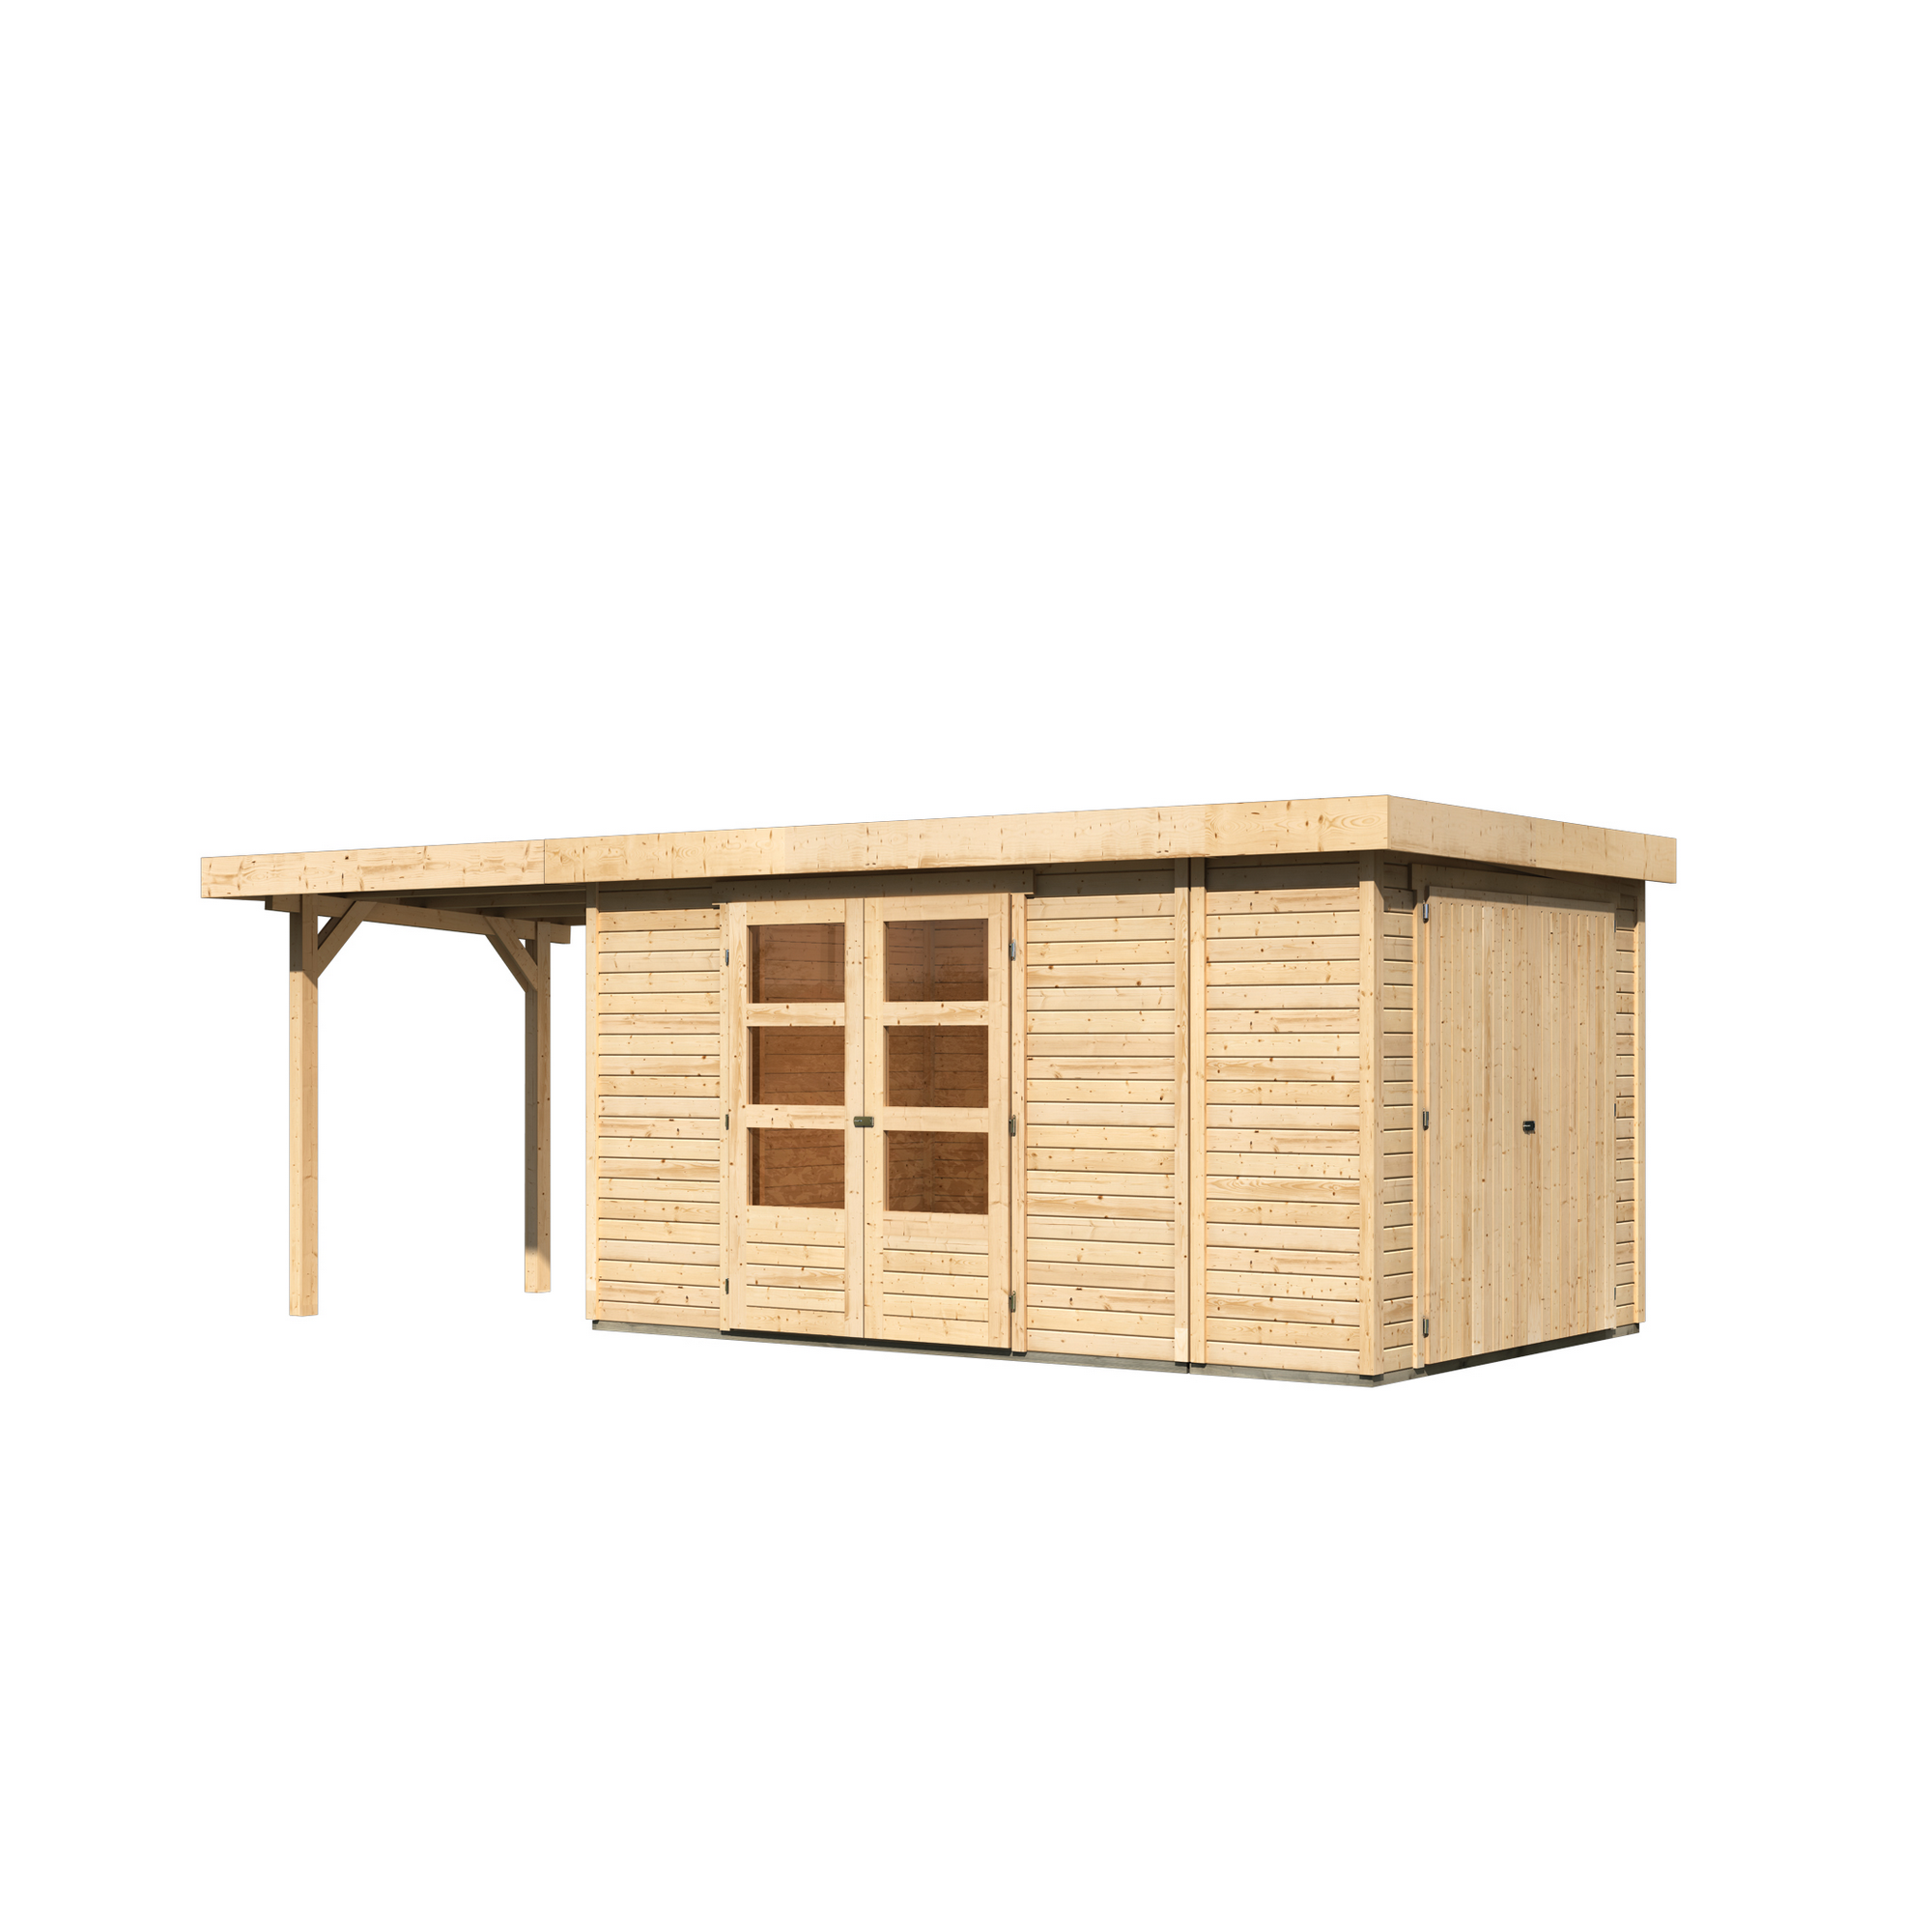 Gartenhaus-Set 'Betola 6' naturbelassen mit Anbauschrank und Schleppdach 629 x 211 x 262 cm + product picture